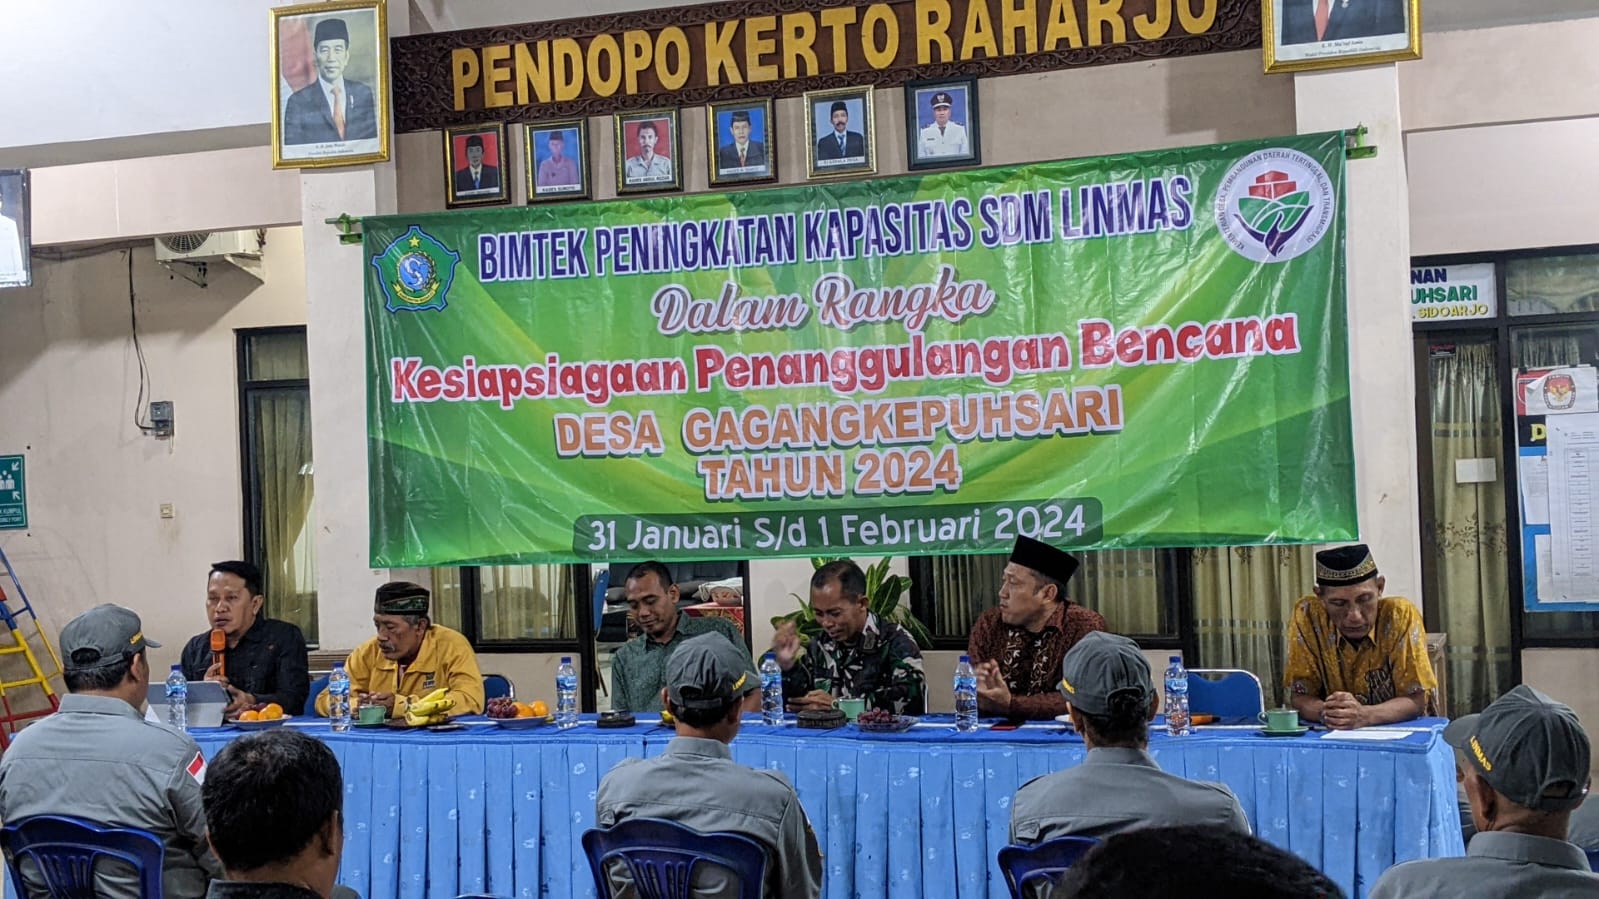 Bimtek peningkatan SDM Linmas dalam rangka Kesiapsiagaan Penanggulangan Bencana di Desa Gagangkepuhsari Kecamatan Balongbendo